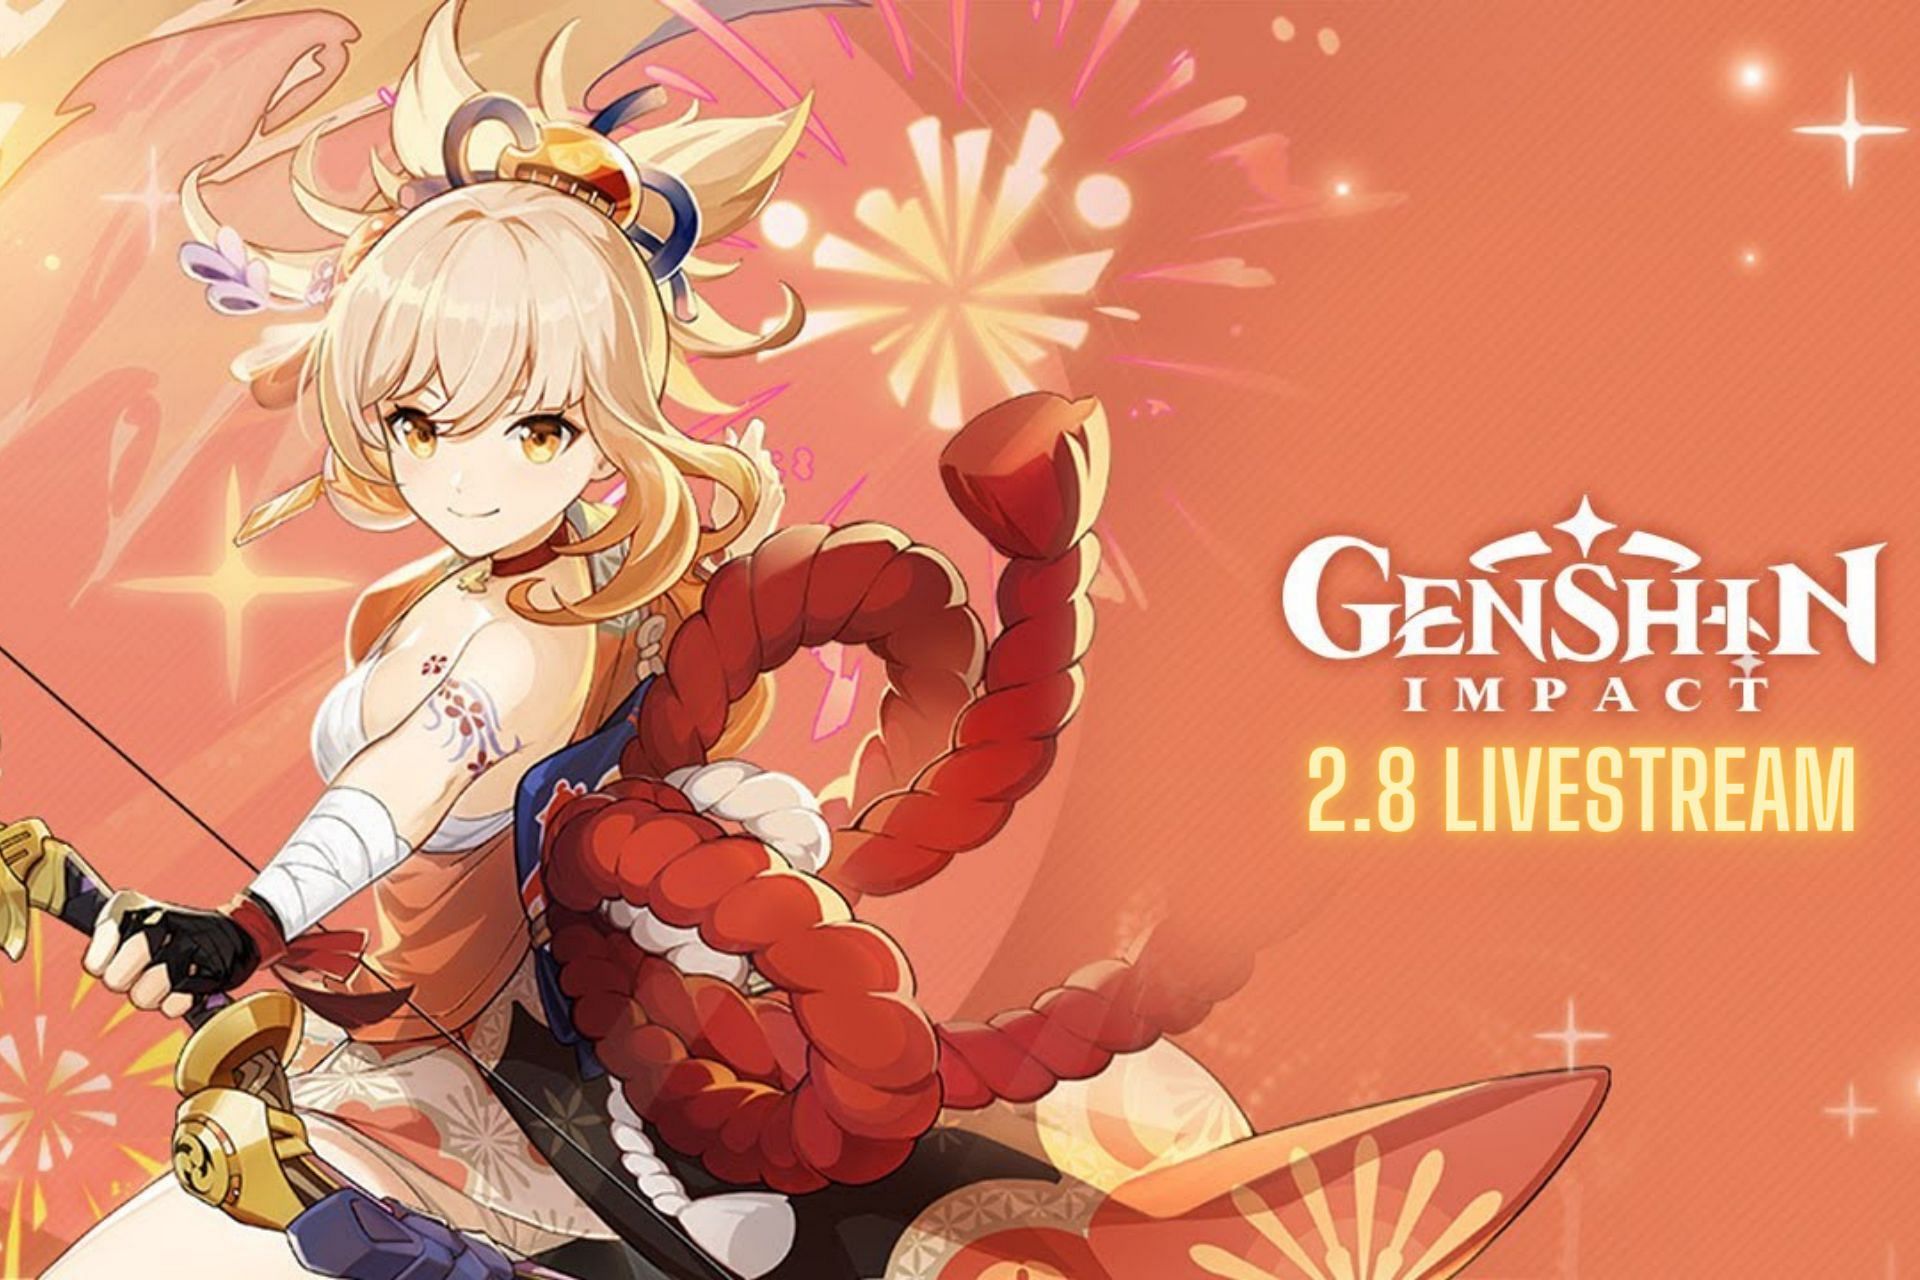 Genshin Impact 2.8 livestream will provide 3 new codes (Image via HoYoverse)